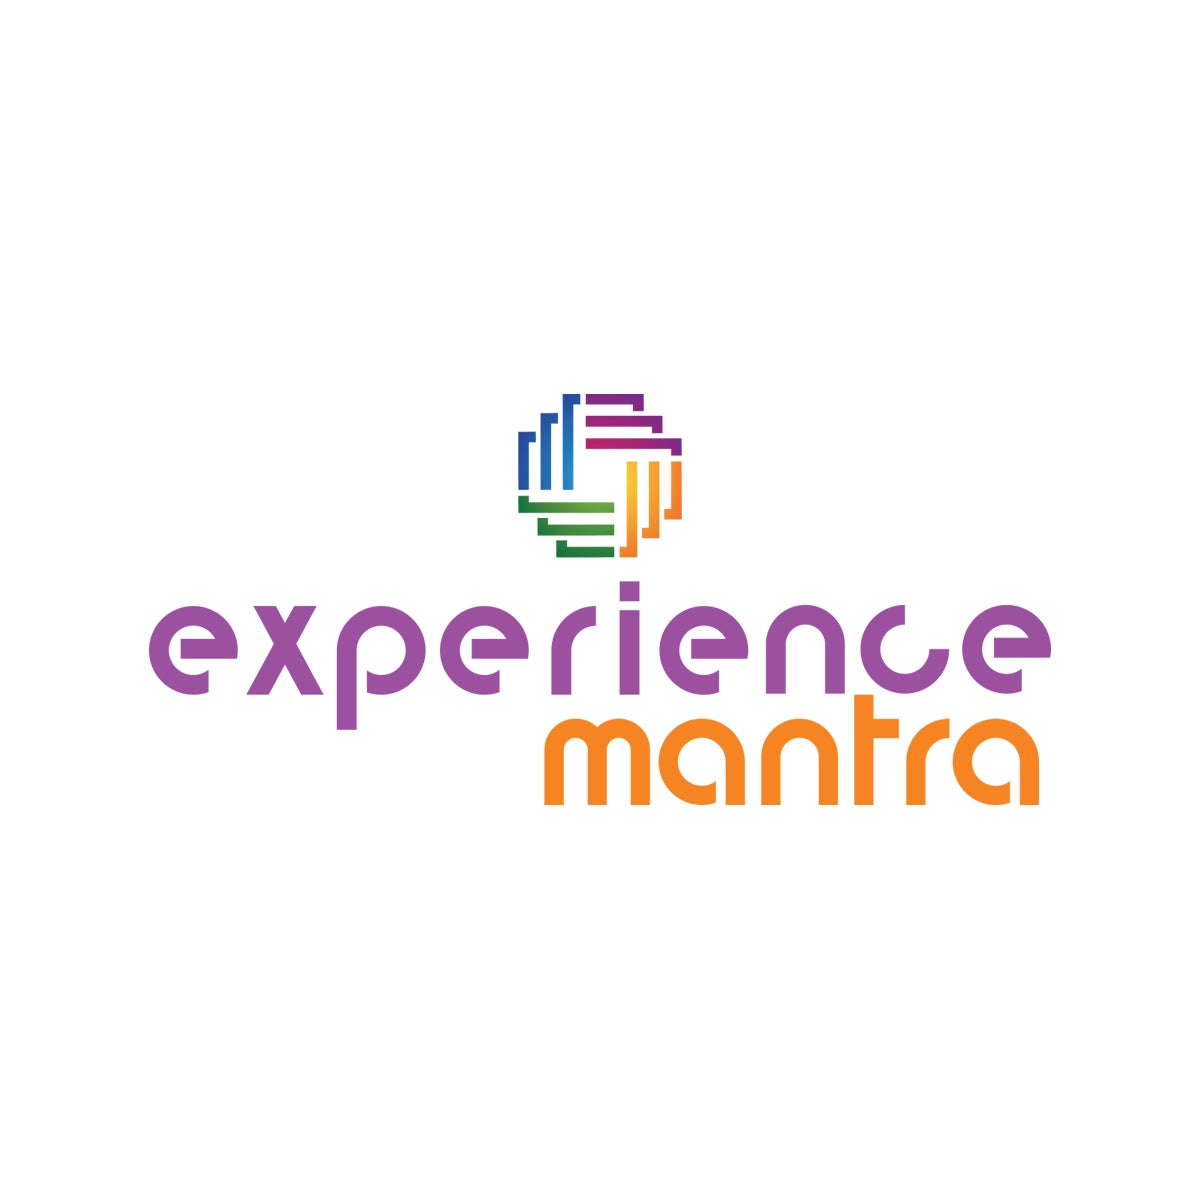 experiencemantra.com